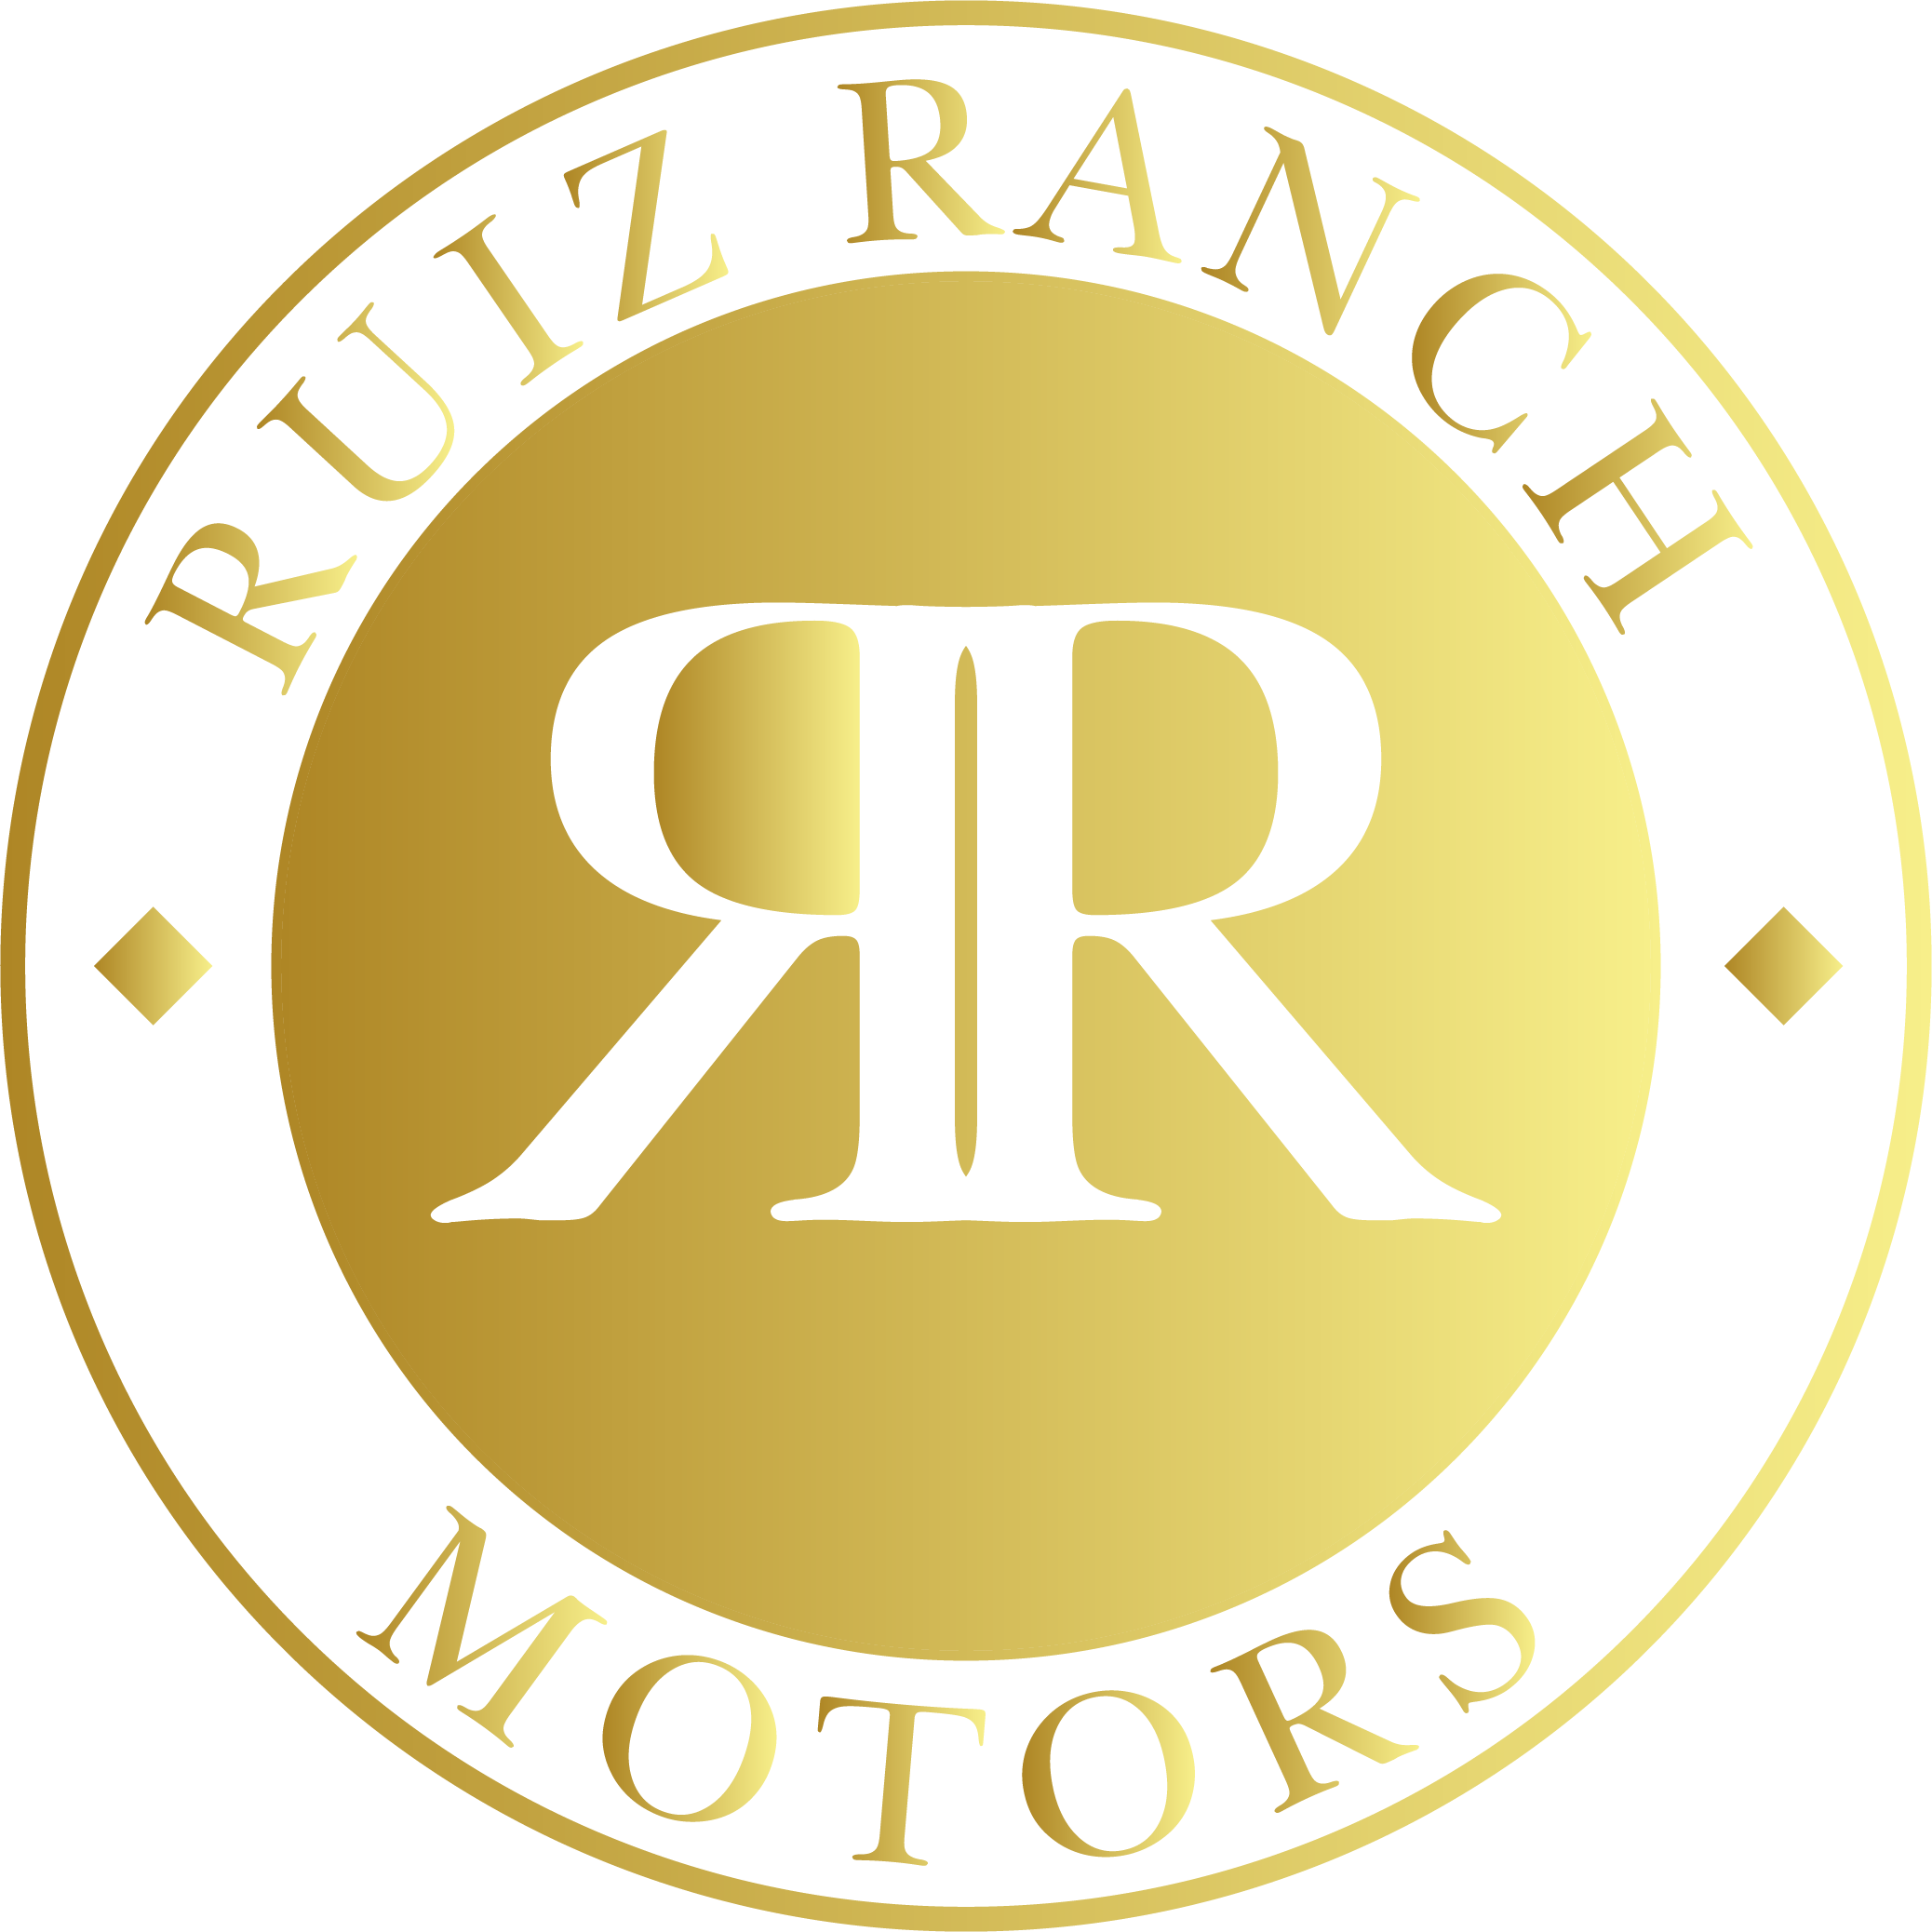 RUIZ RANCH MOTORS